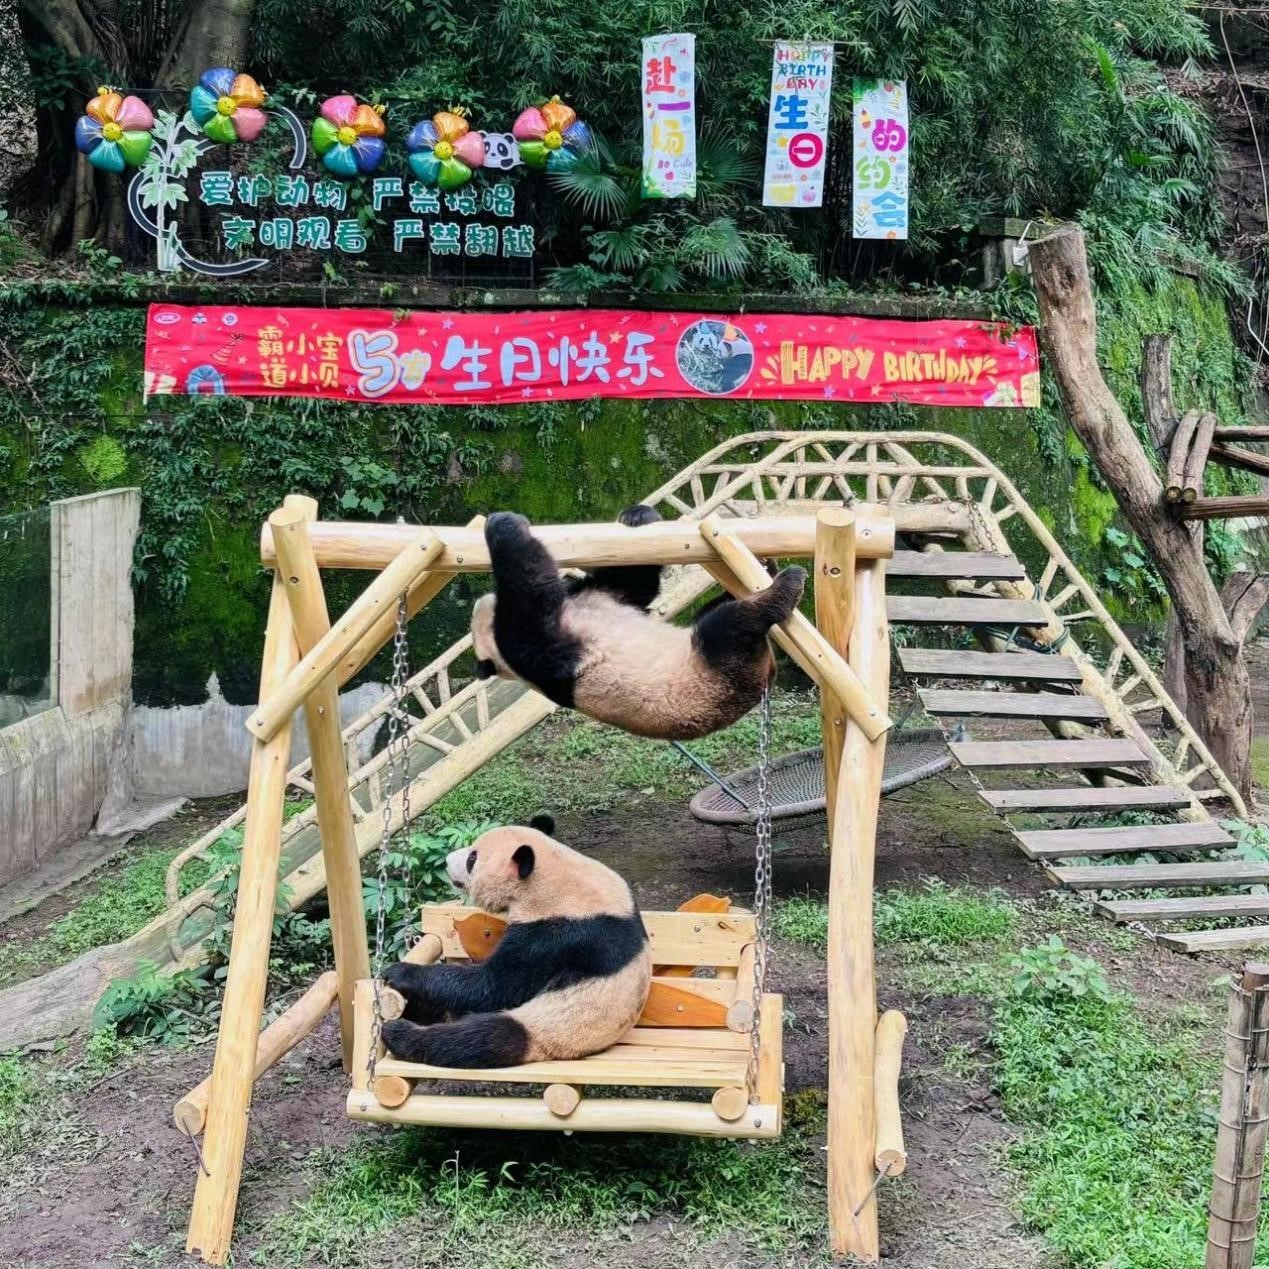 卫龙为终身认养熊猫兄弟庆生  积极推动大熊猫保护公益事业发展